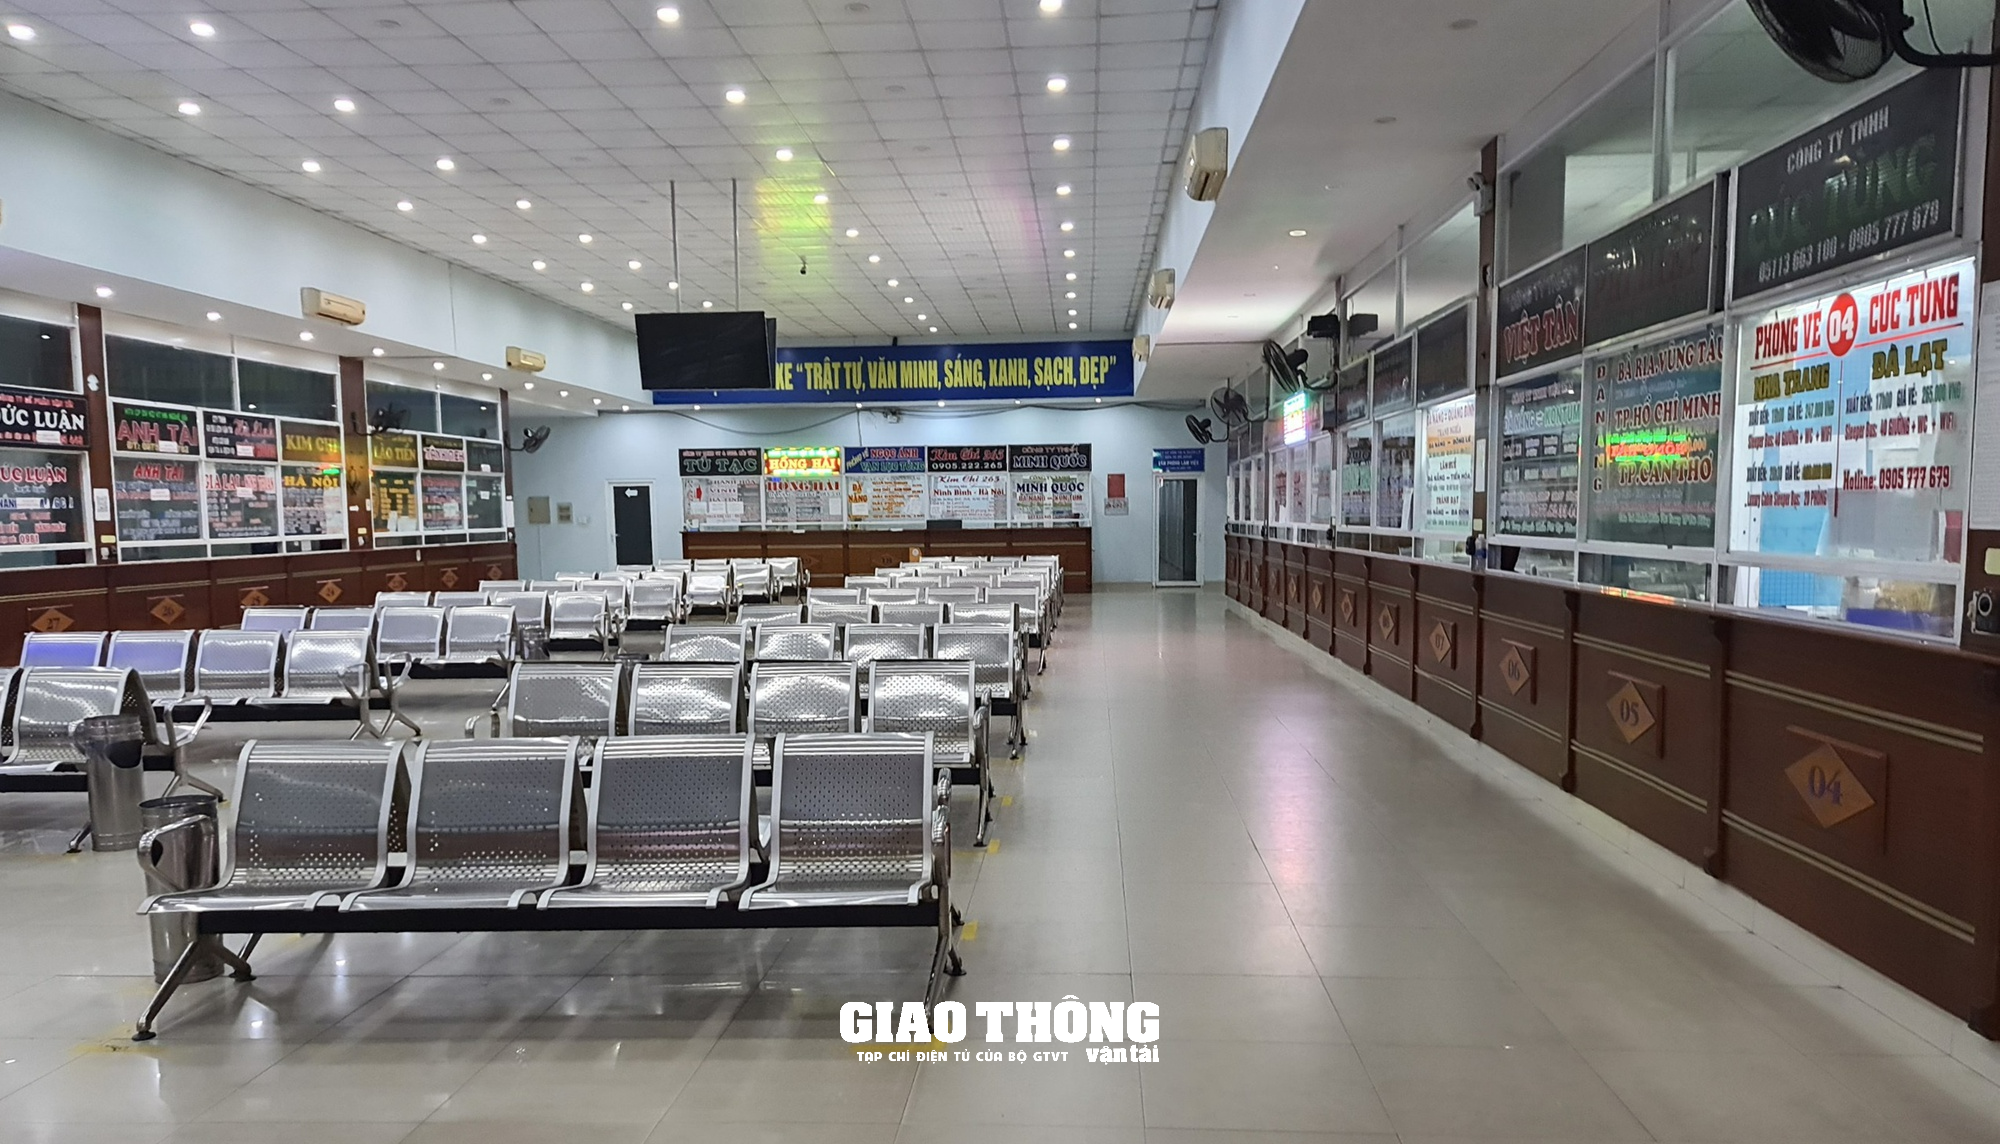 Chùm ảnh: Bến xe, sân bay Đà Nẵng nhộn nhịp khách những ngày cuối năm - Ảnh 11.